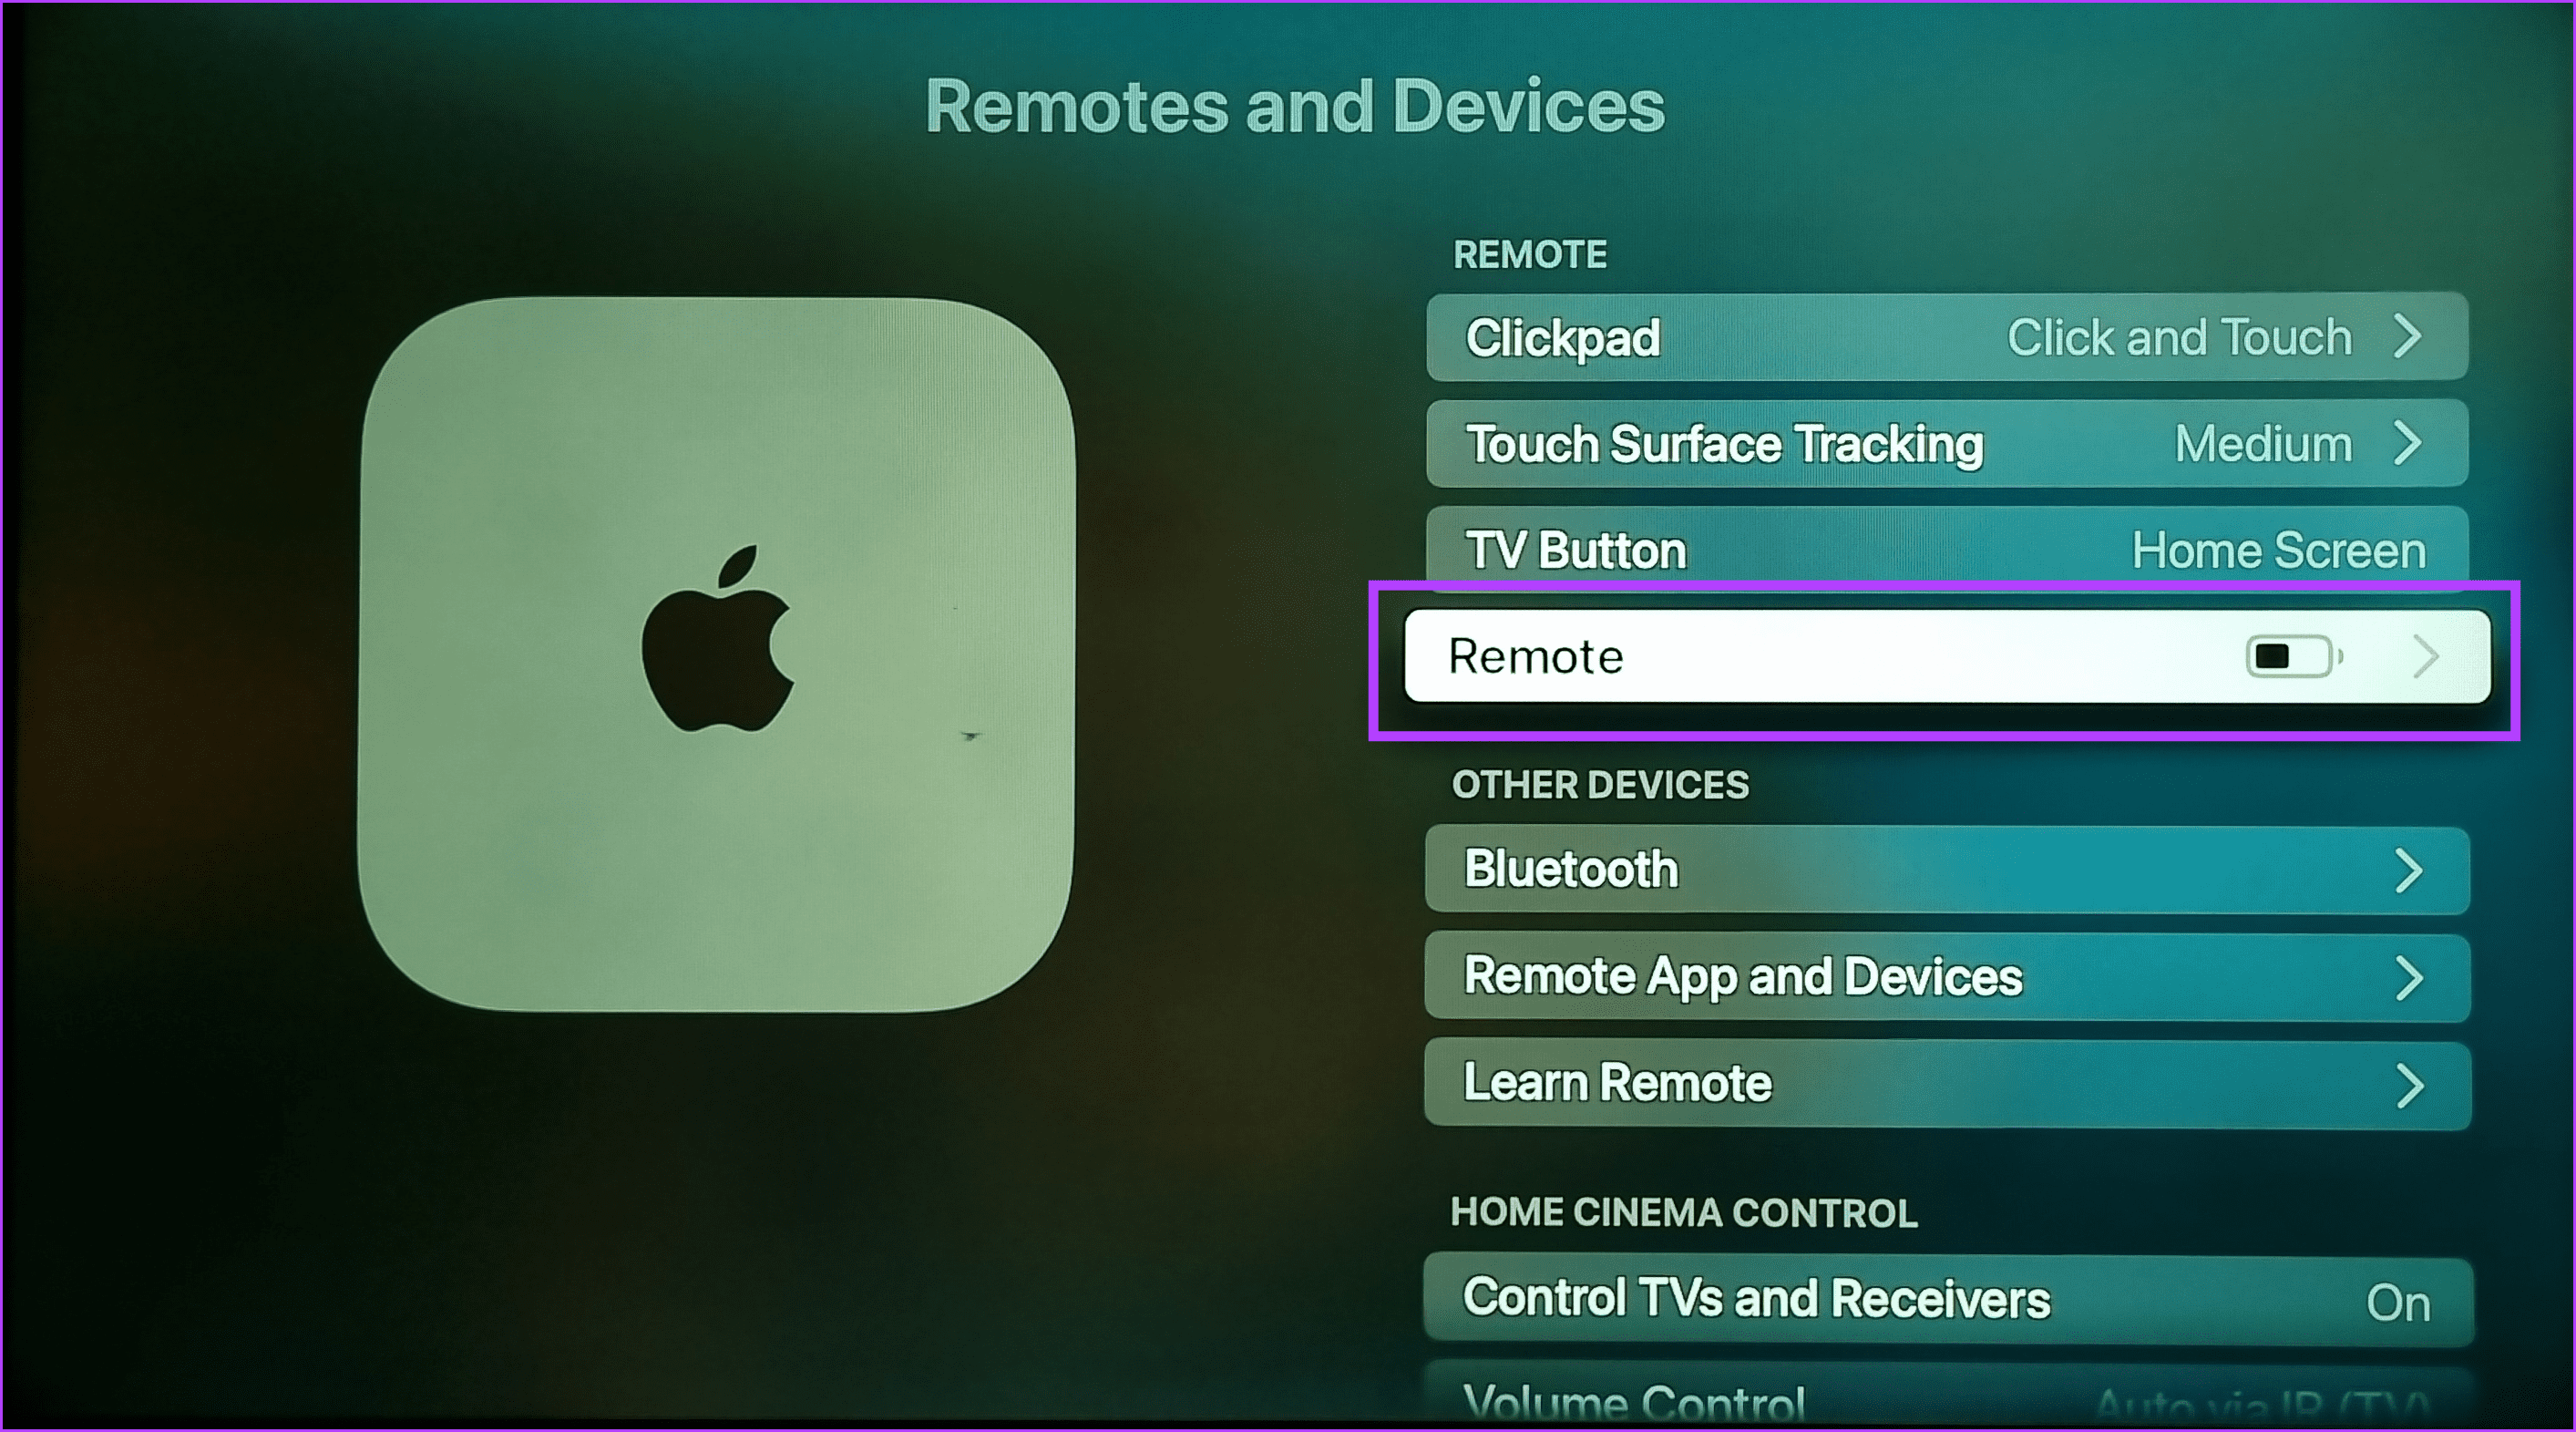 Select Remote